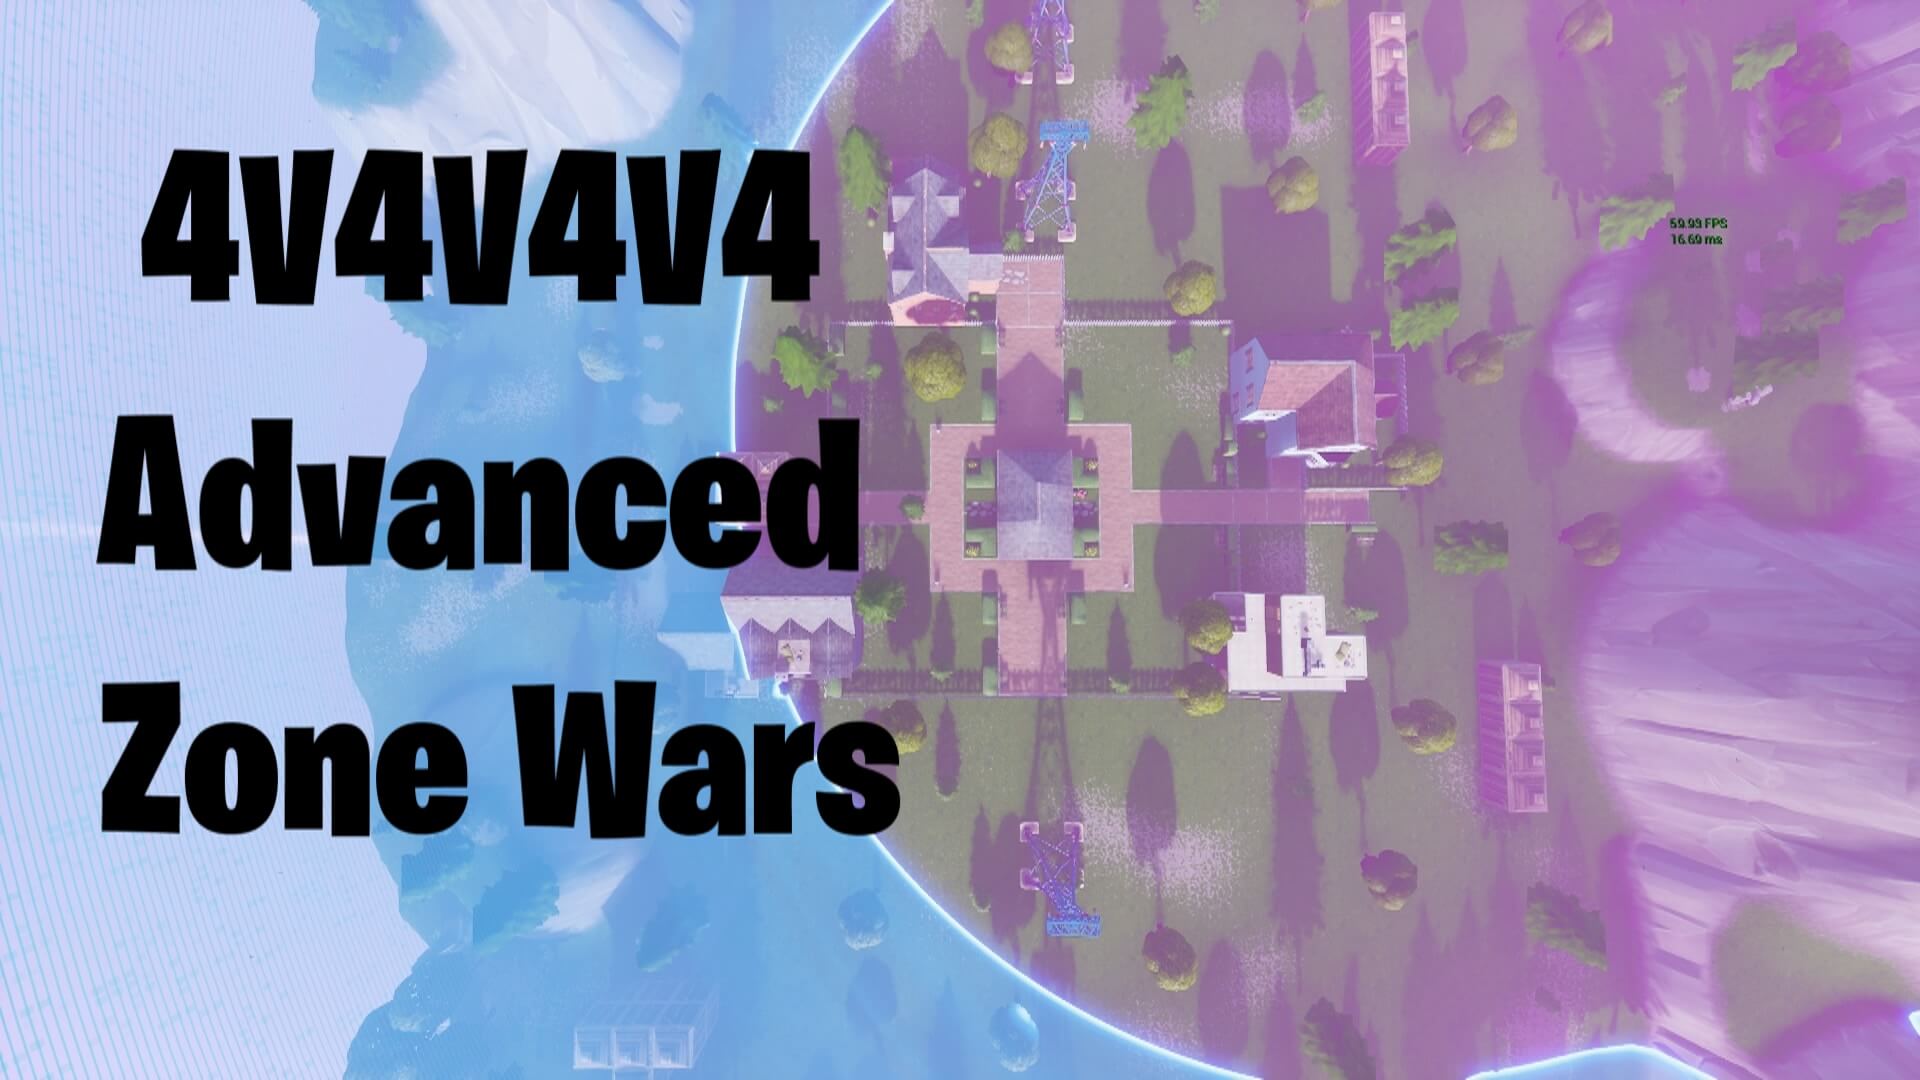 4V4V4V4 ADVANCED ZONE WARS (V1.0)